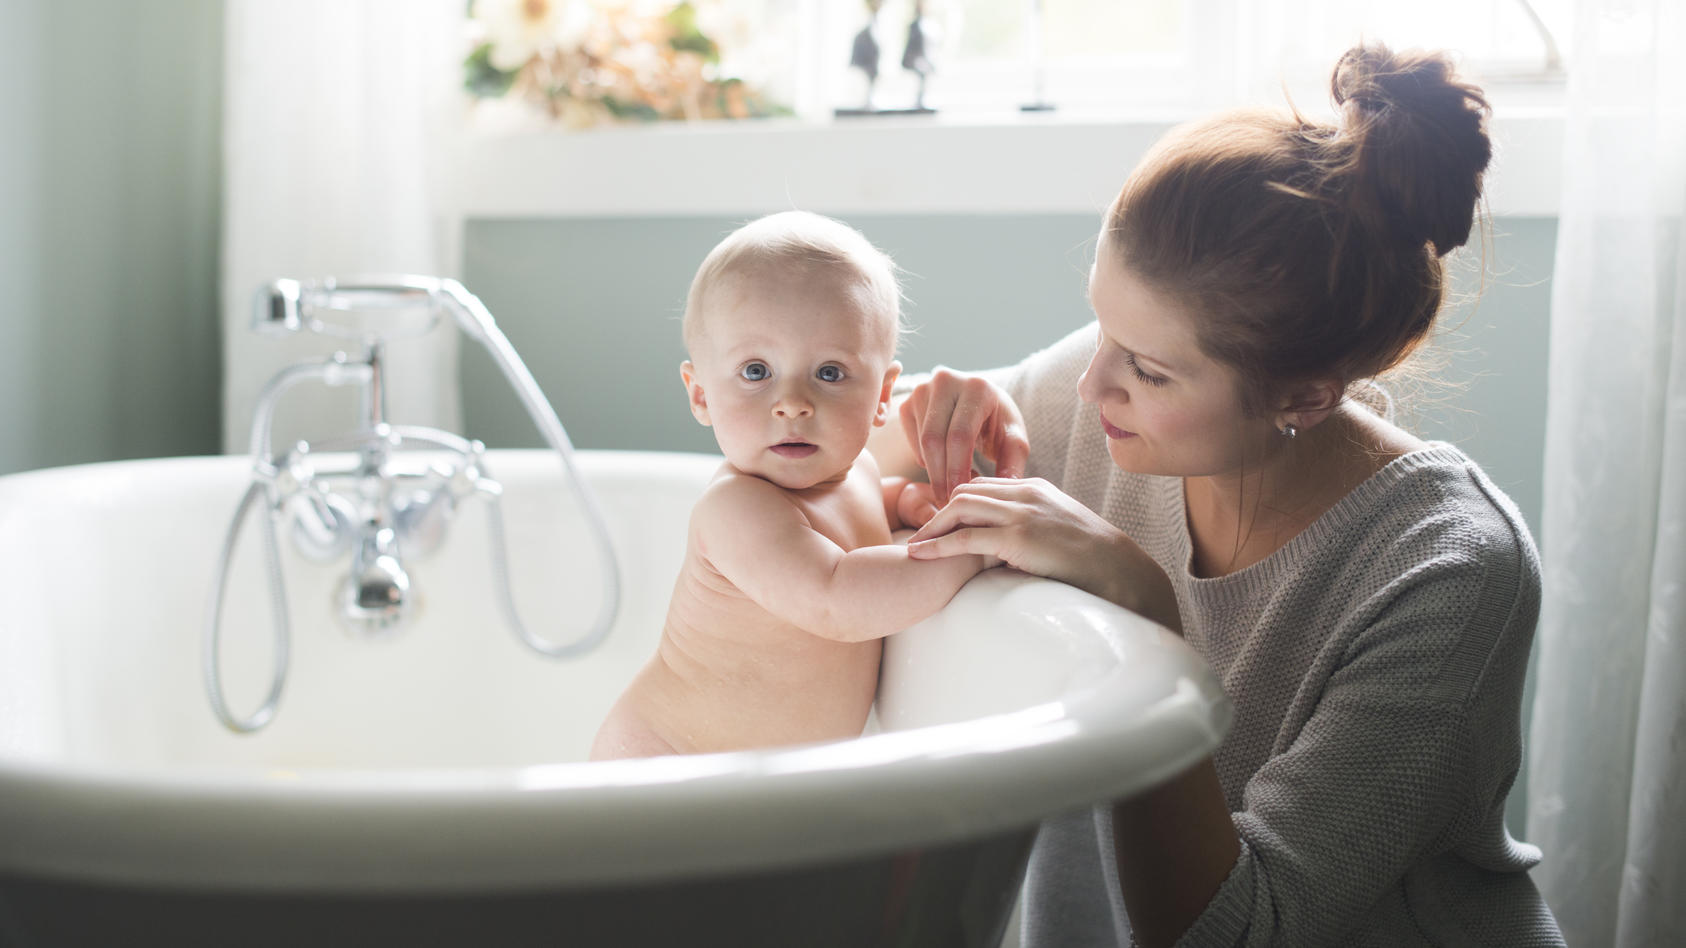 Beim Baden des Babys ist die richtige Temperatur entscheidend für ein hautschonendes Badevergnügen. Ein Badethermometer kann helfen für eine angenehme Temperatur zu sorgen und die empfindliche Babyhaut zu schonen.